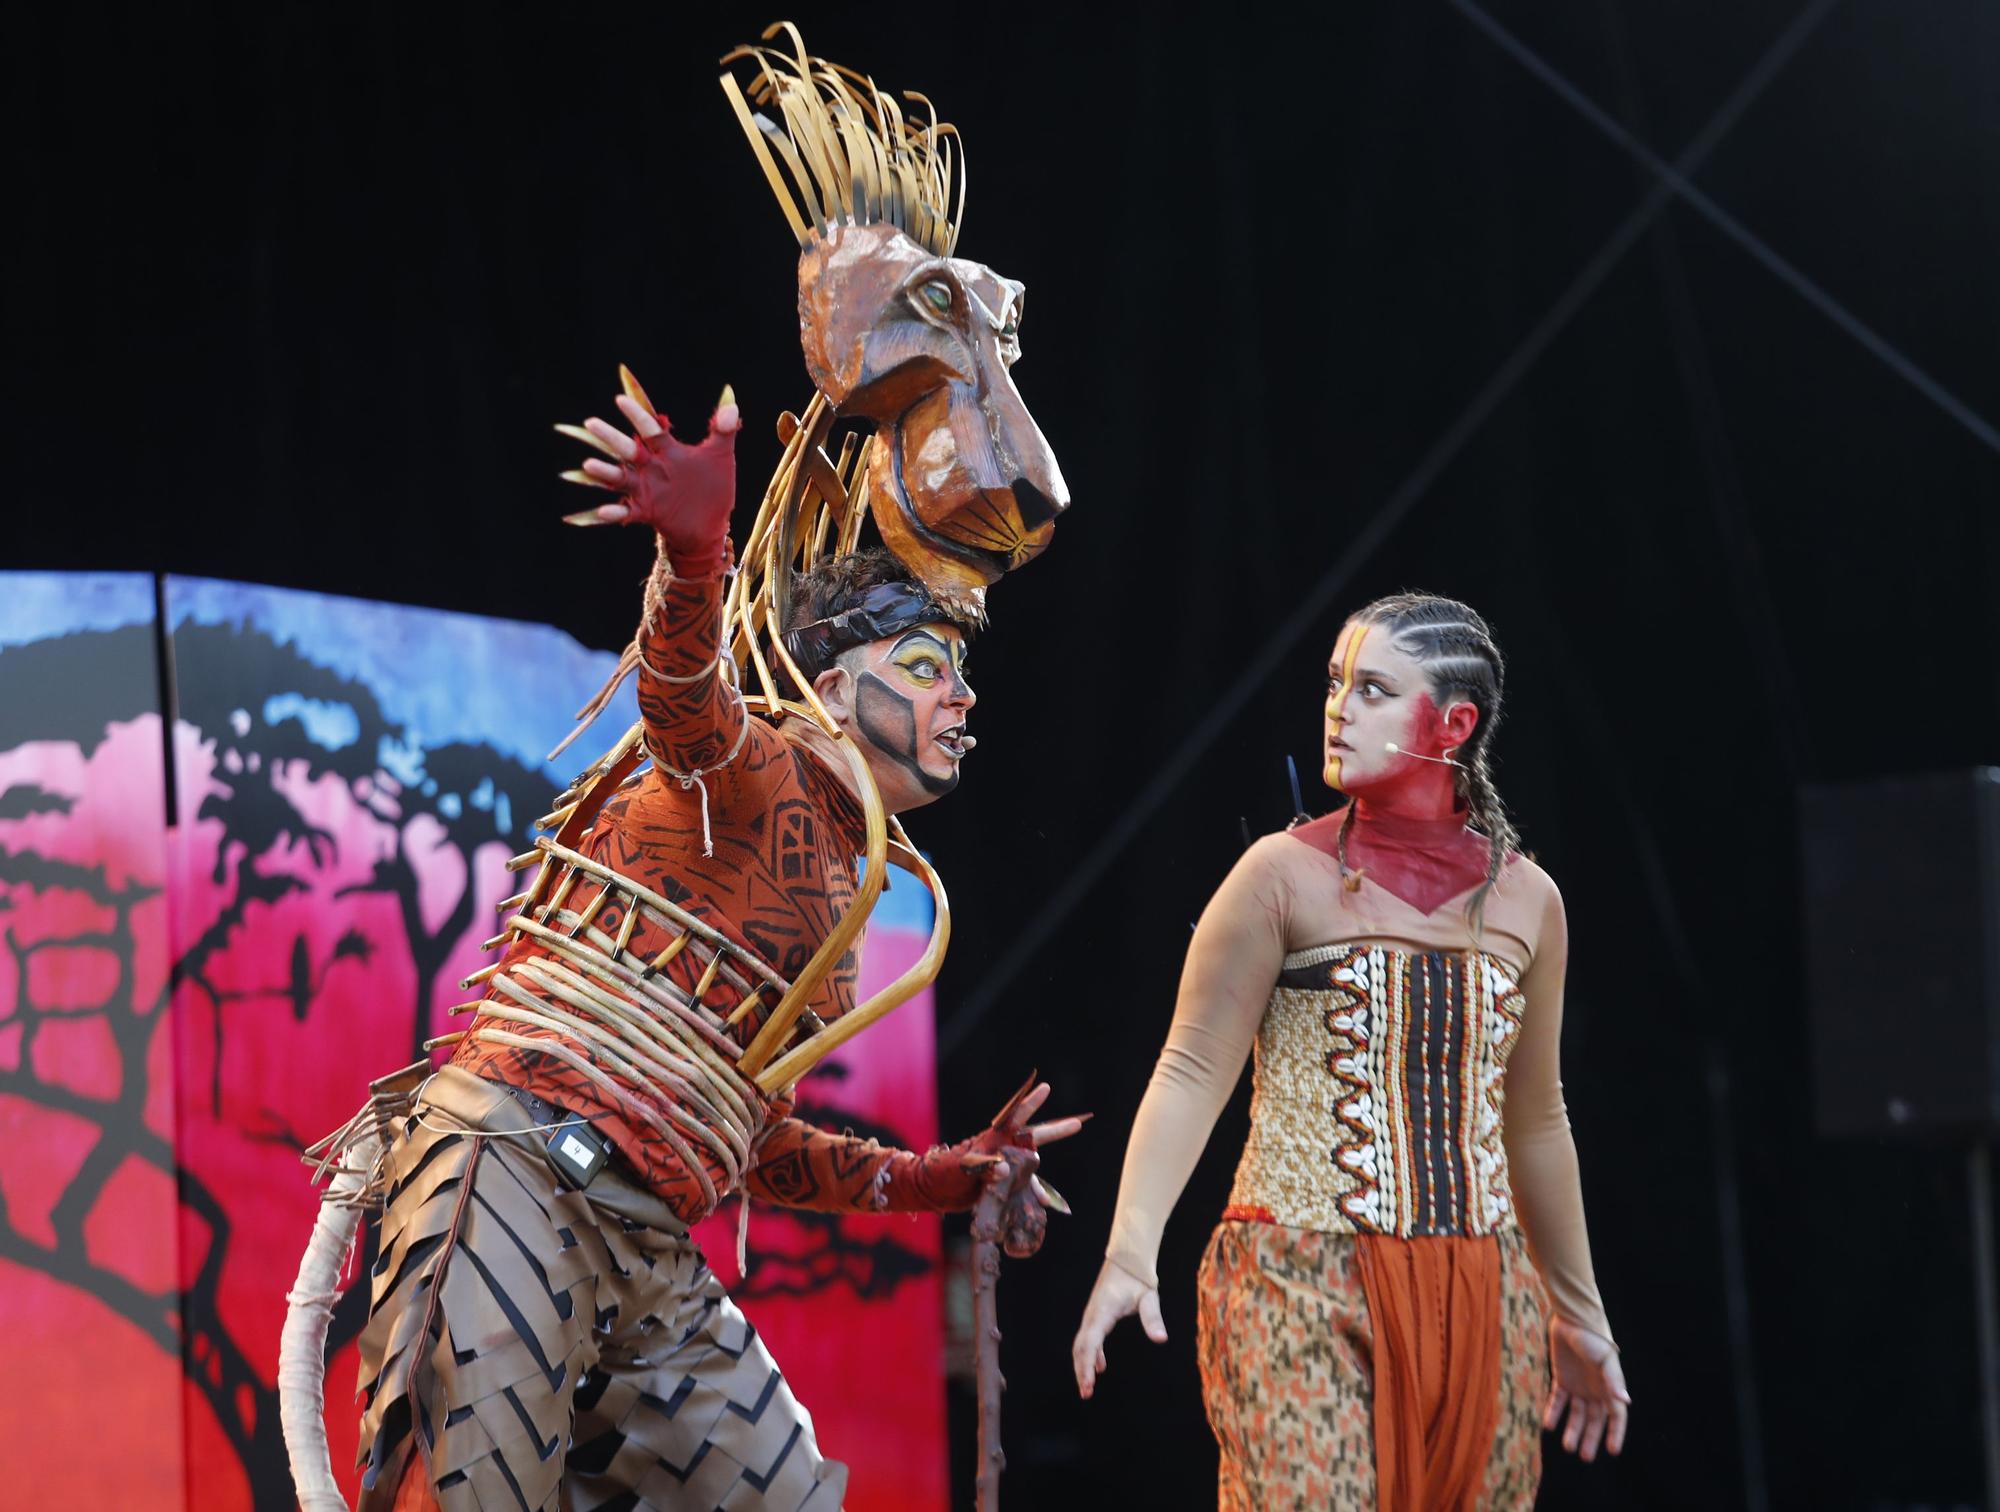 El musical "O Rei da Sabana" congrega a cientos de familias en Castrelos